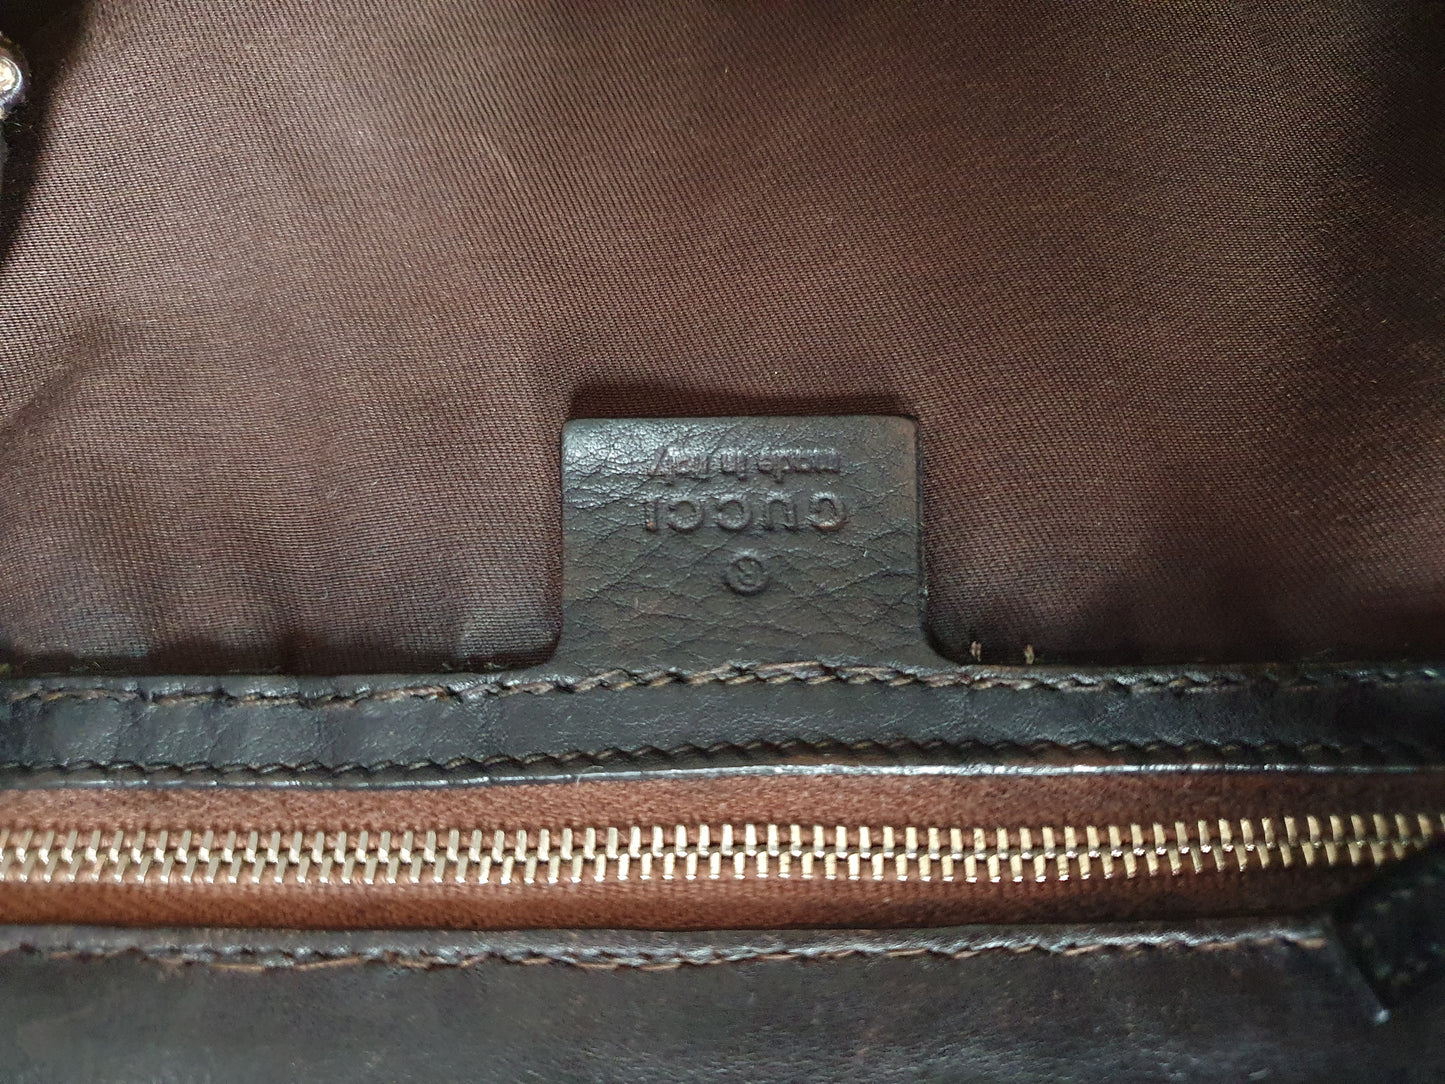 Gucci bow large handbag